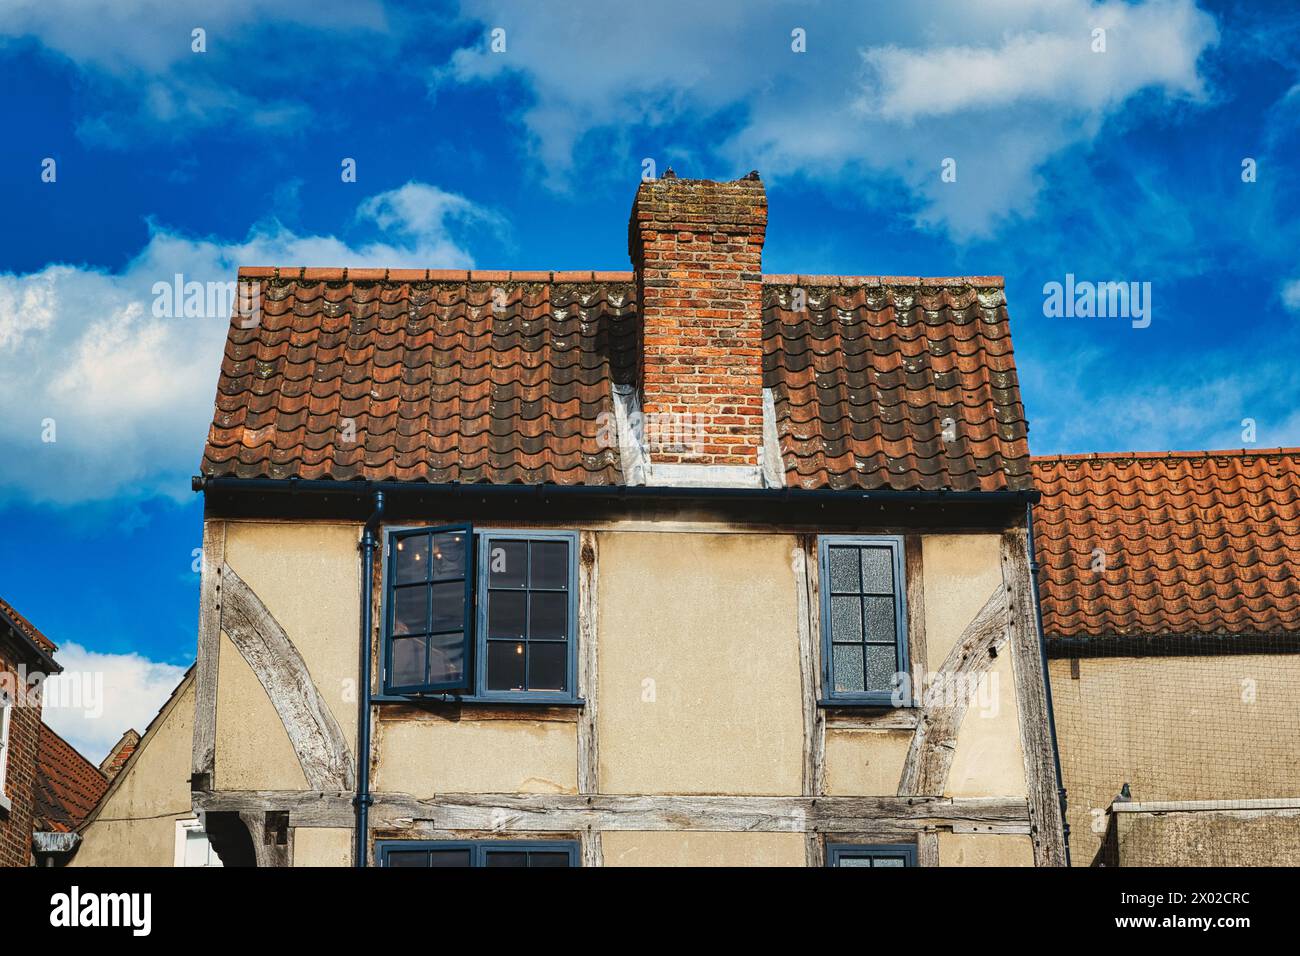 Vecchia casa europea con pareti a graticcio e un tetto di tegole rosse su un cielo blu con nuvole. Architettura d'epoca con vestibilità e carattere visibili Foto Stock